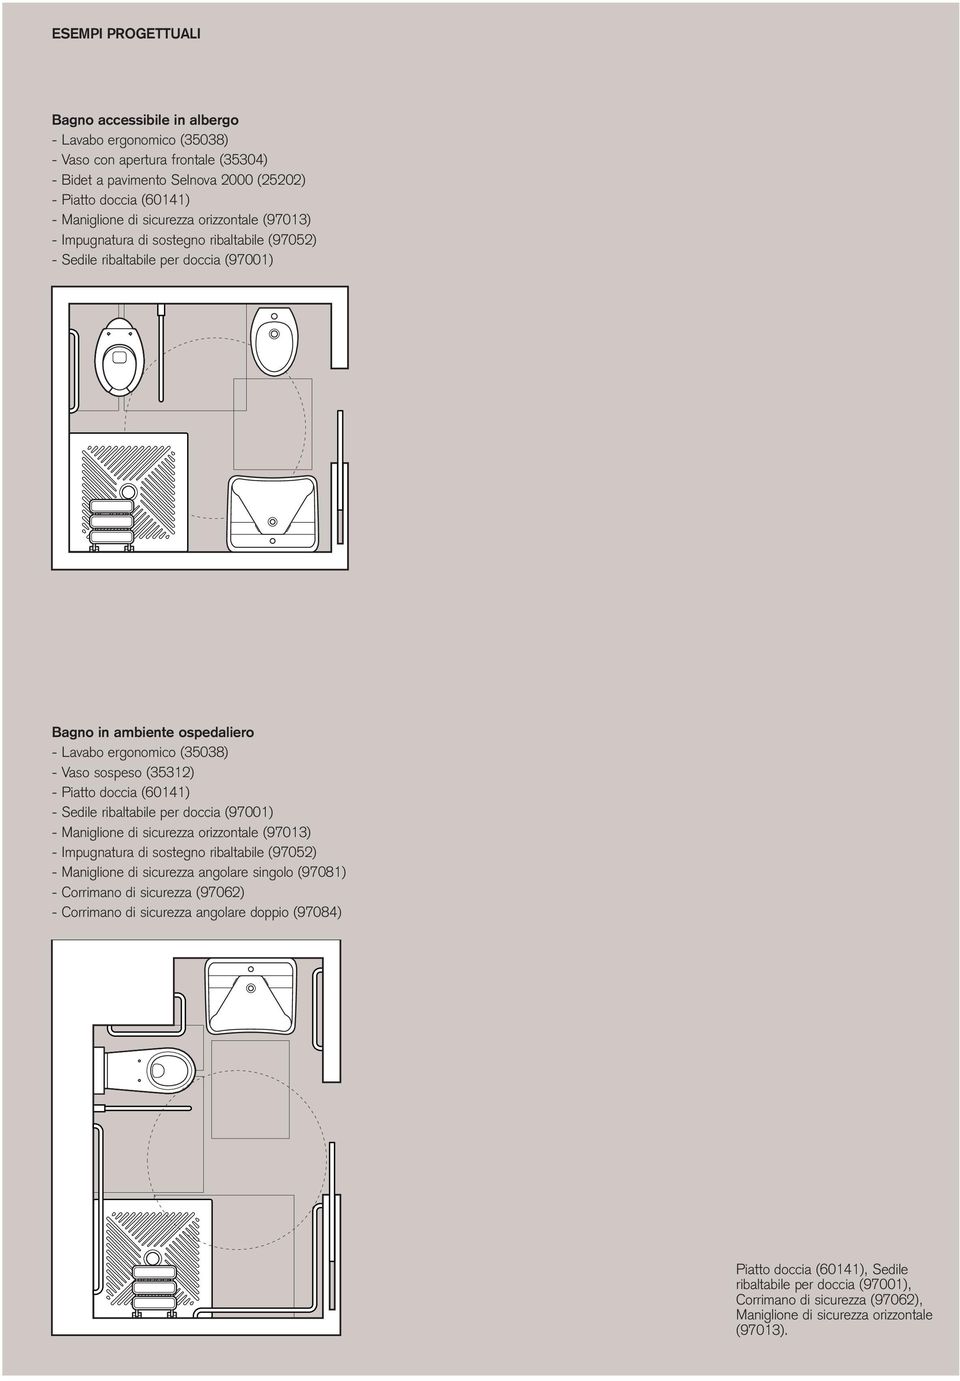 Piatto doccia (60141) - Sedile ribaltabile per doccia (97001) - Maniglione di sicurezza orizzontale (97013) - Impugnatura di sostegno ribaltabile (97052) - Maniglione di sicurezza angolare singolo